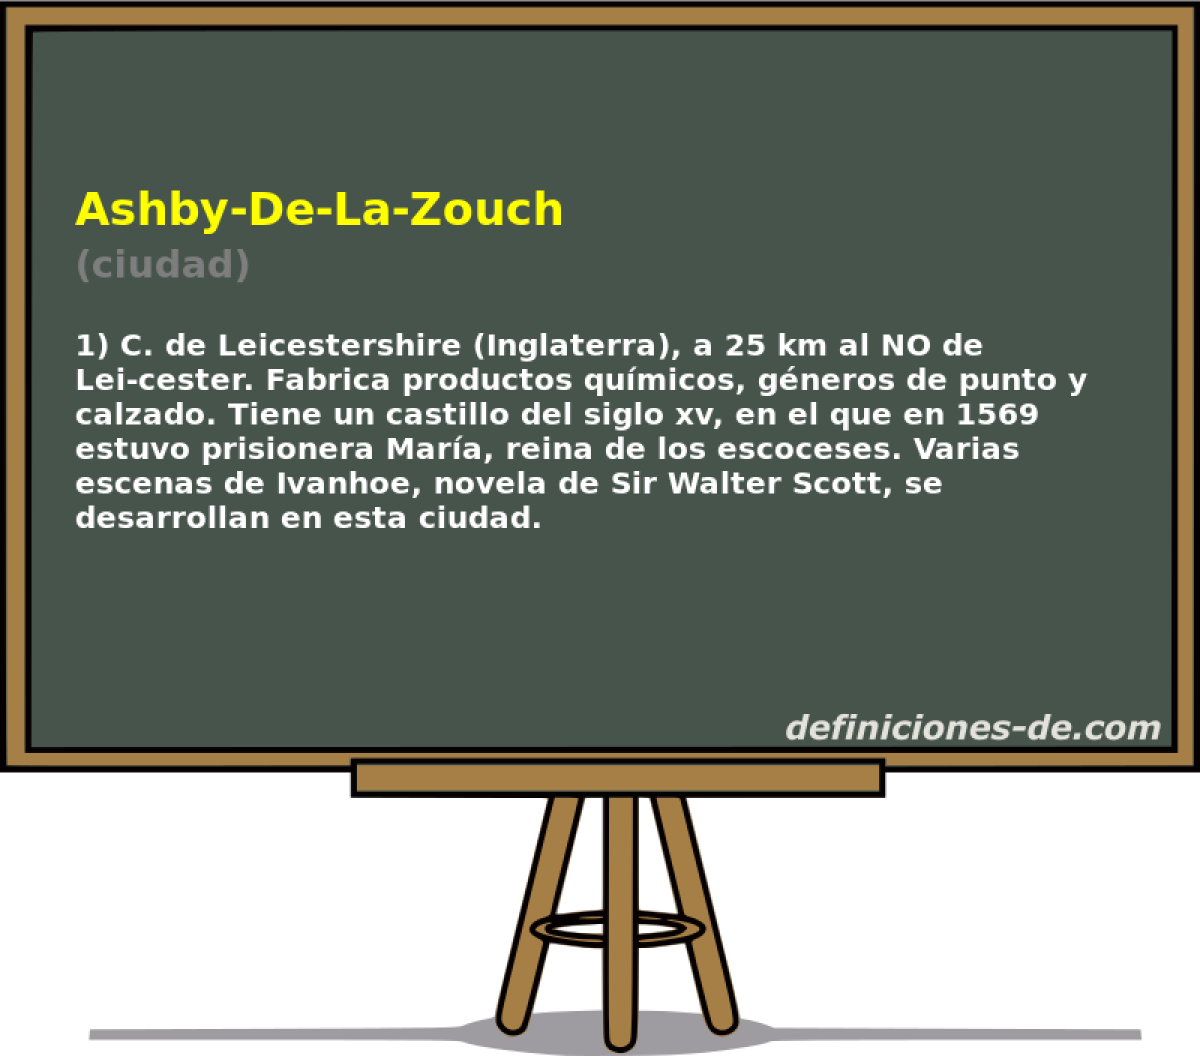 Ashby-De-La-Zouch (ciudad)